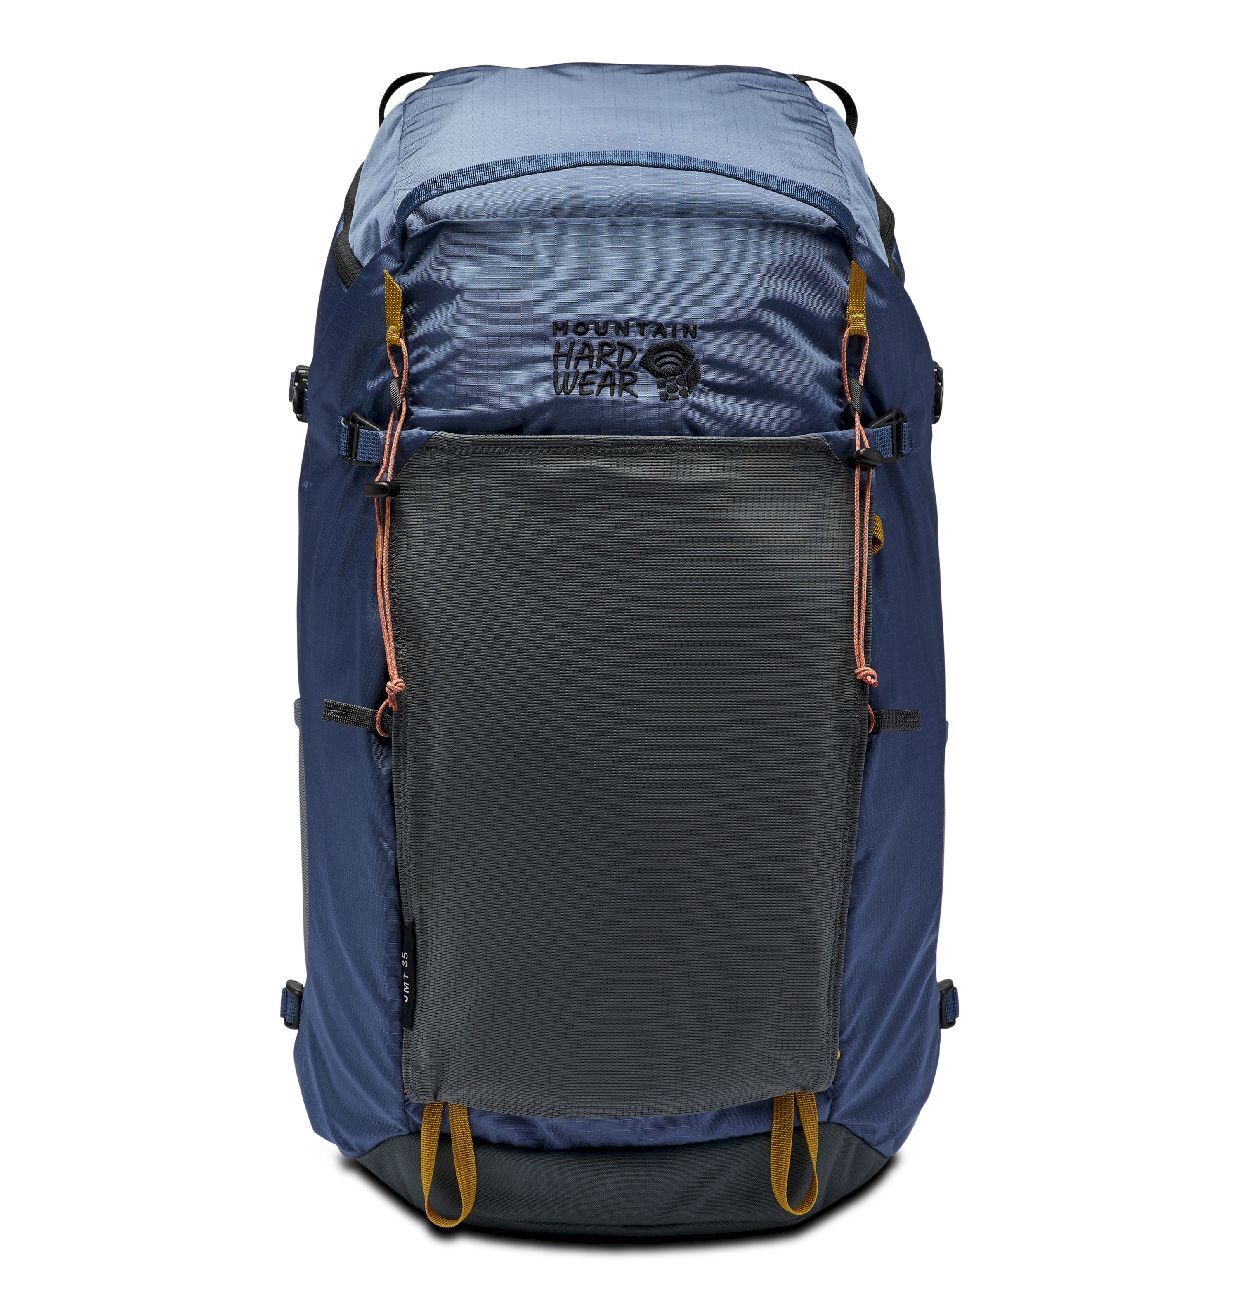 Mountain Hardwear JMT 35L Backpack  - Walking backpack - Women's